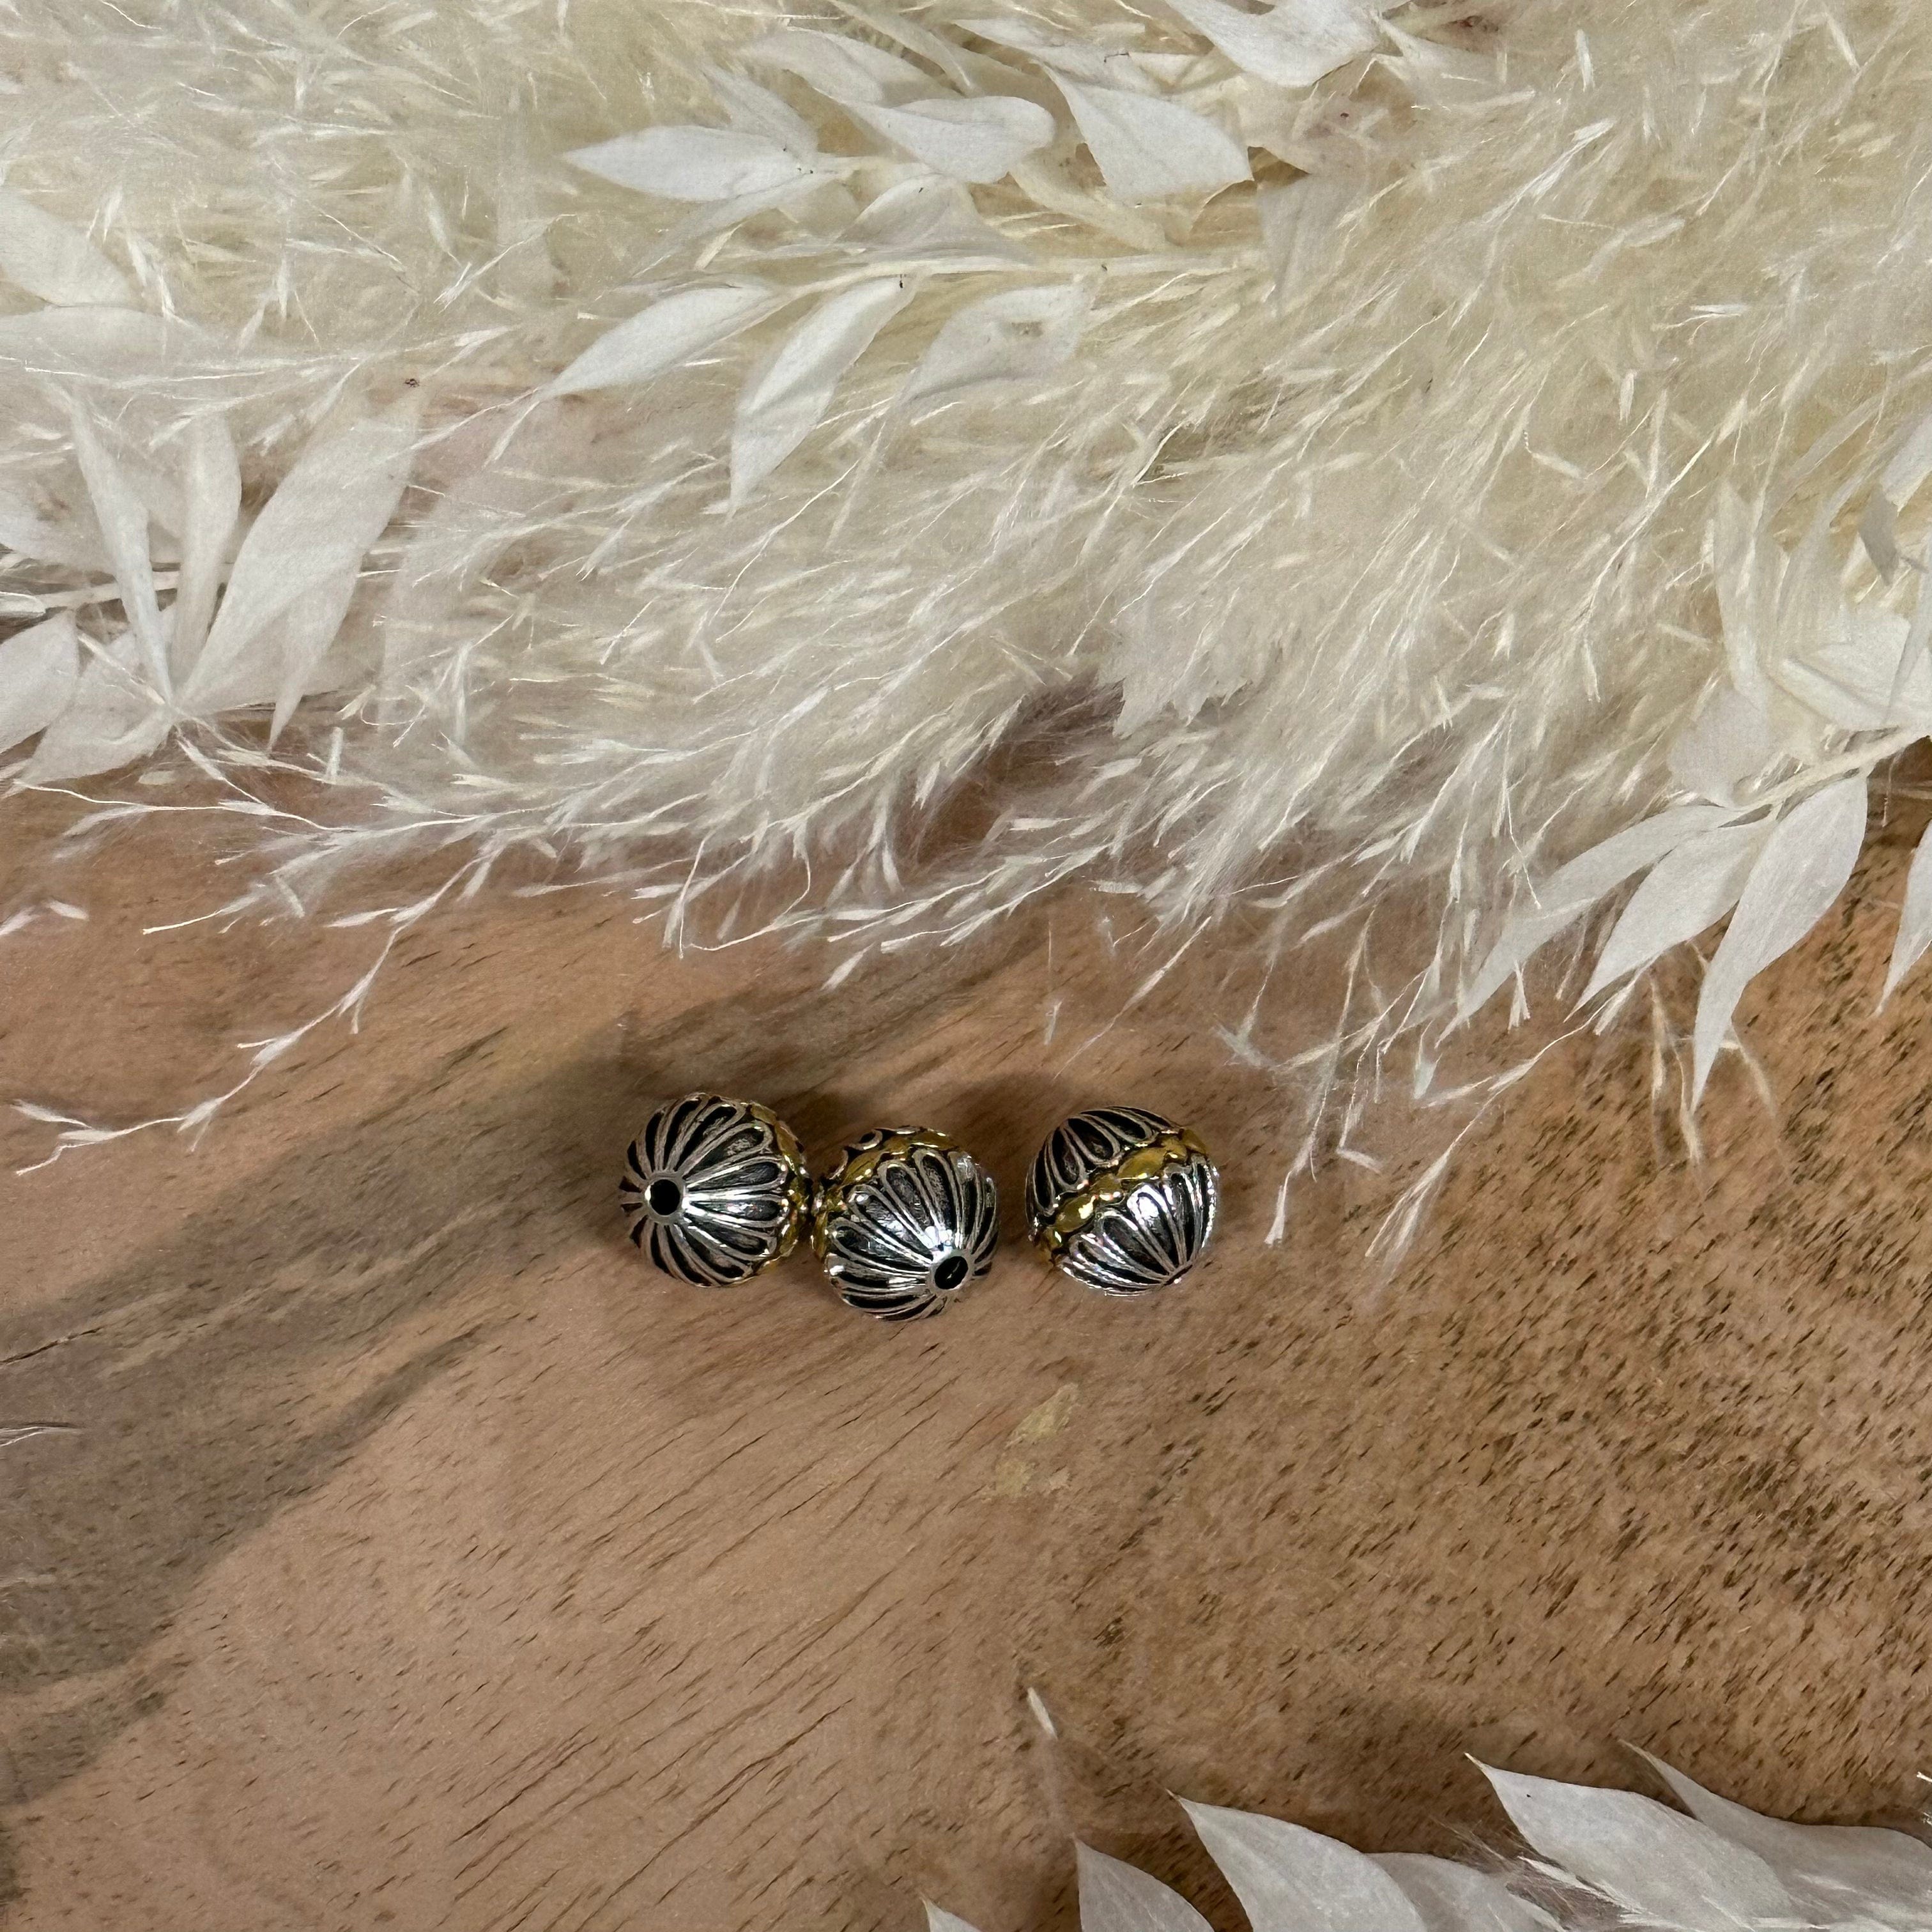 brightstars Wunderschöne Perlen in Gold & Silber mit einzigartigen Mustern für DIY Ohrring Armband Halskette Schmuckherstellung